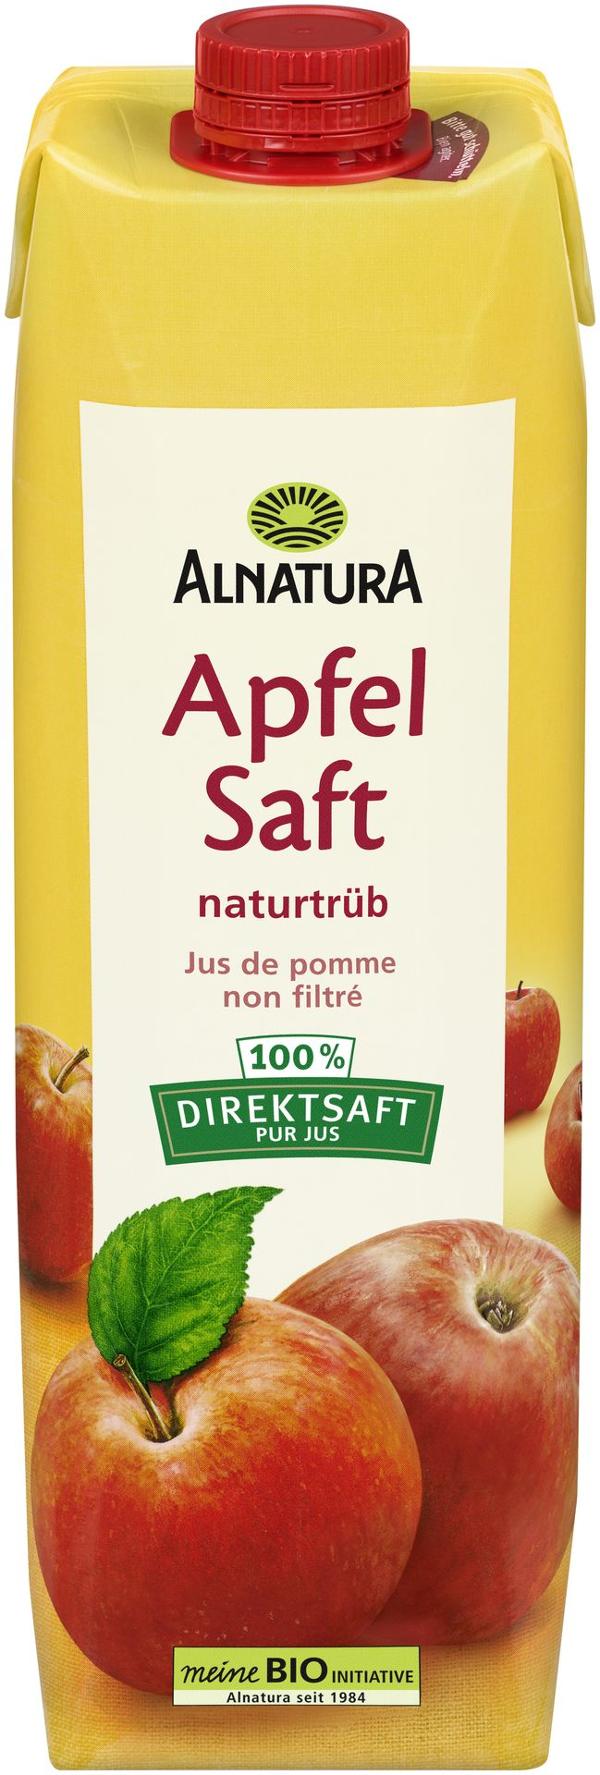 Produktfoto zu Apfelsaft naturtrüb 1 l Alnatura